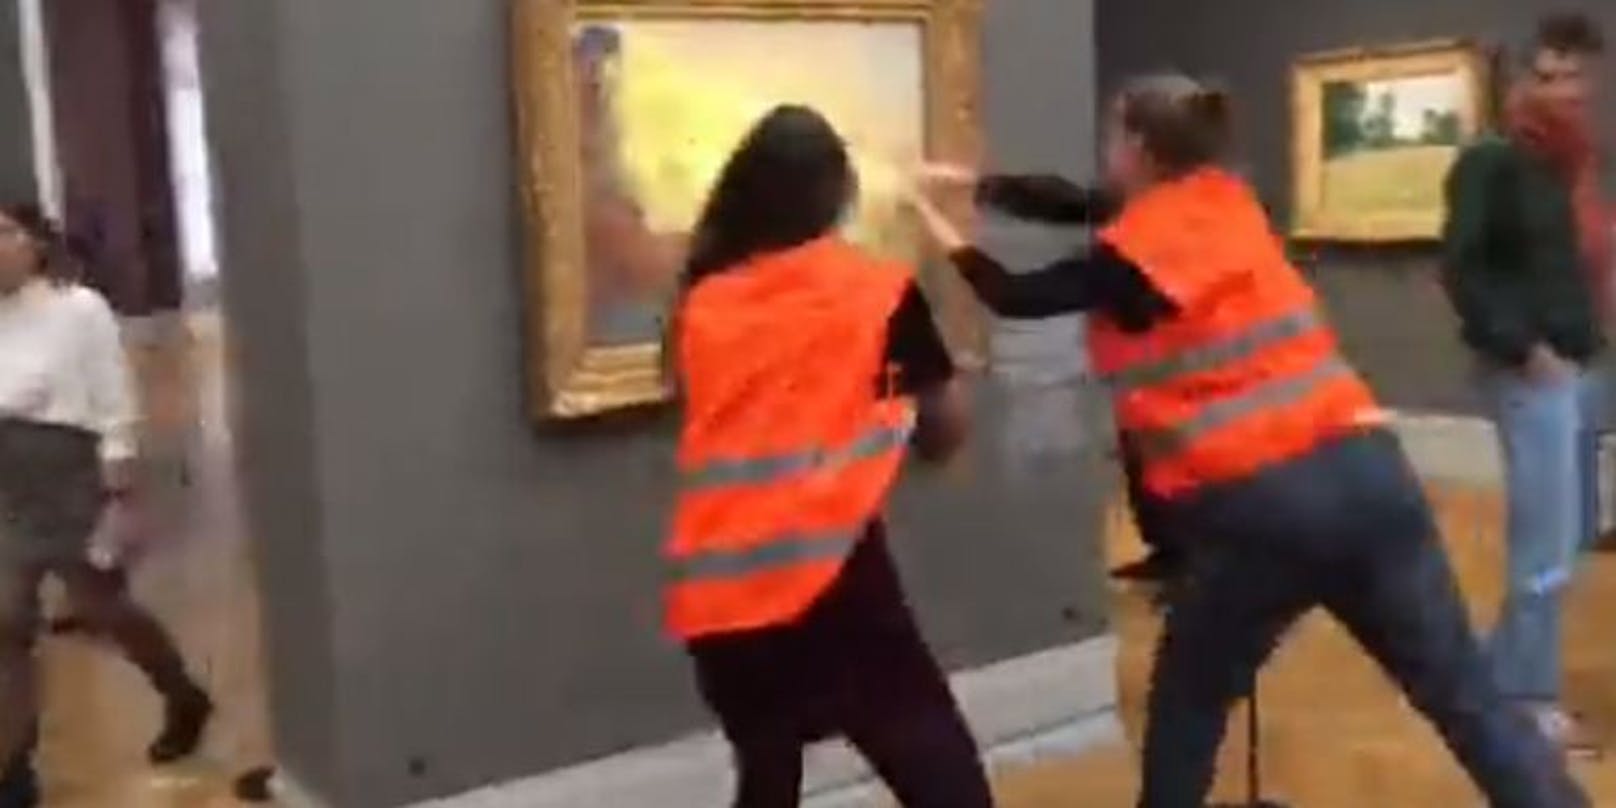 Im Museum Barberini in Potsdam kam es am Sonntag zu einem Zwischenfall. Aktivisten bewarfen ein teures Gemälde von Monet mit Püree.